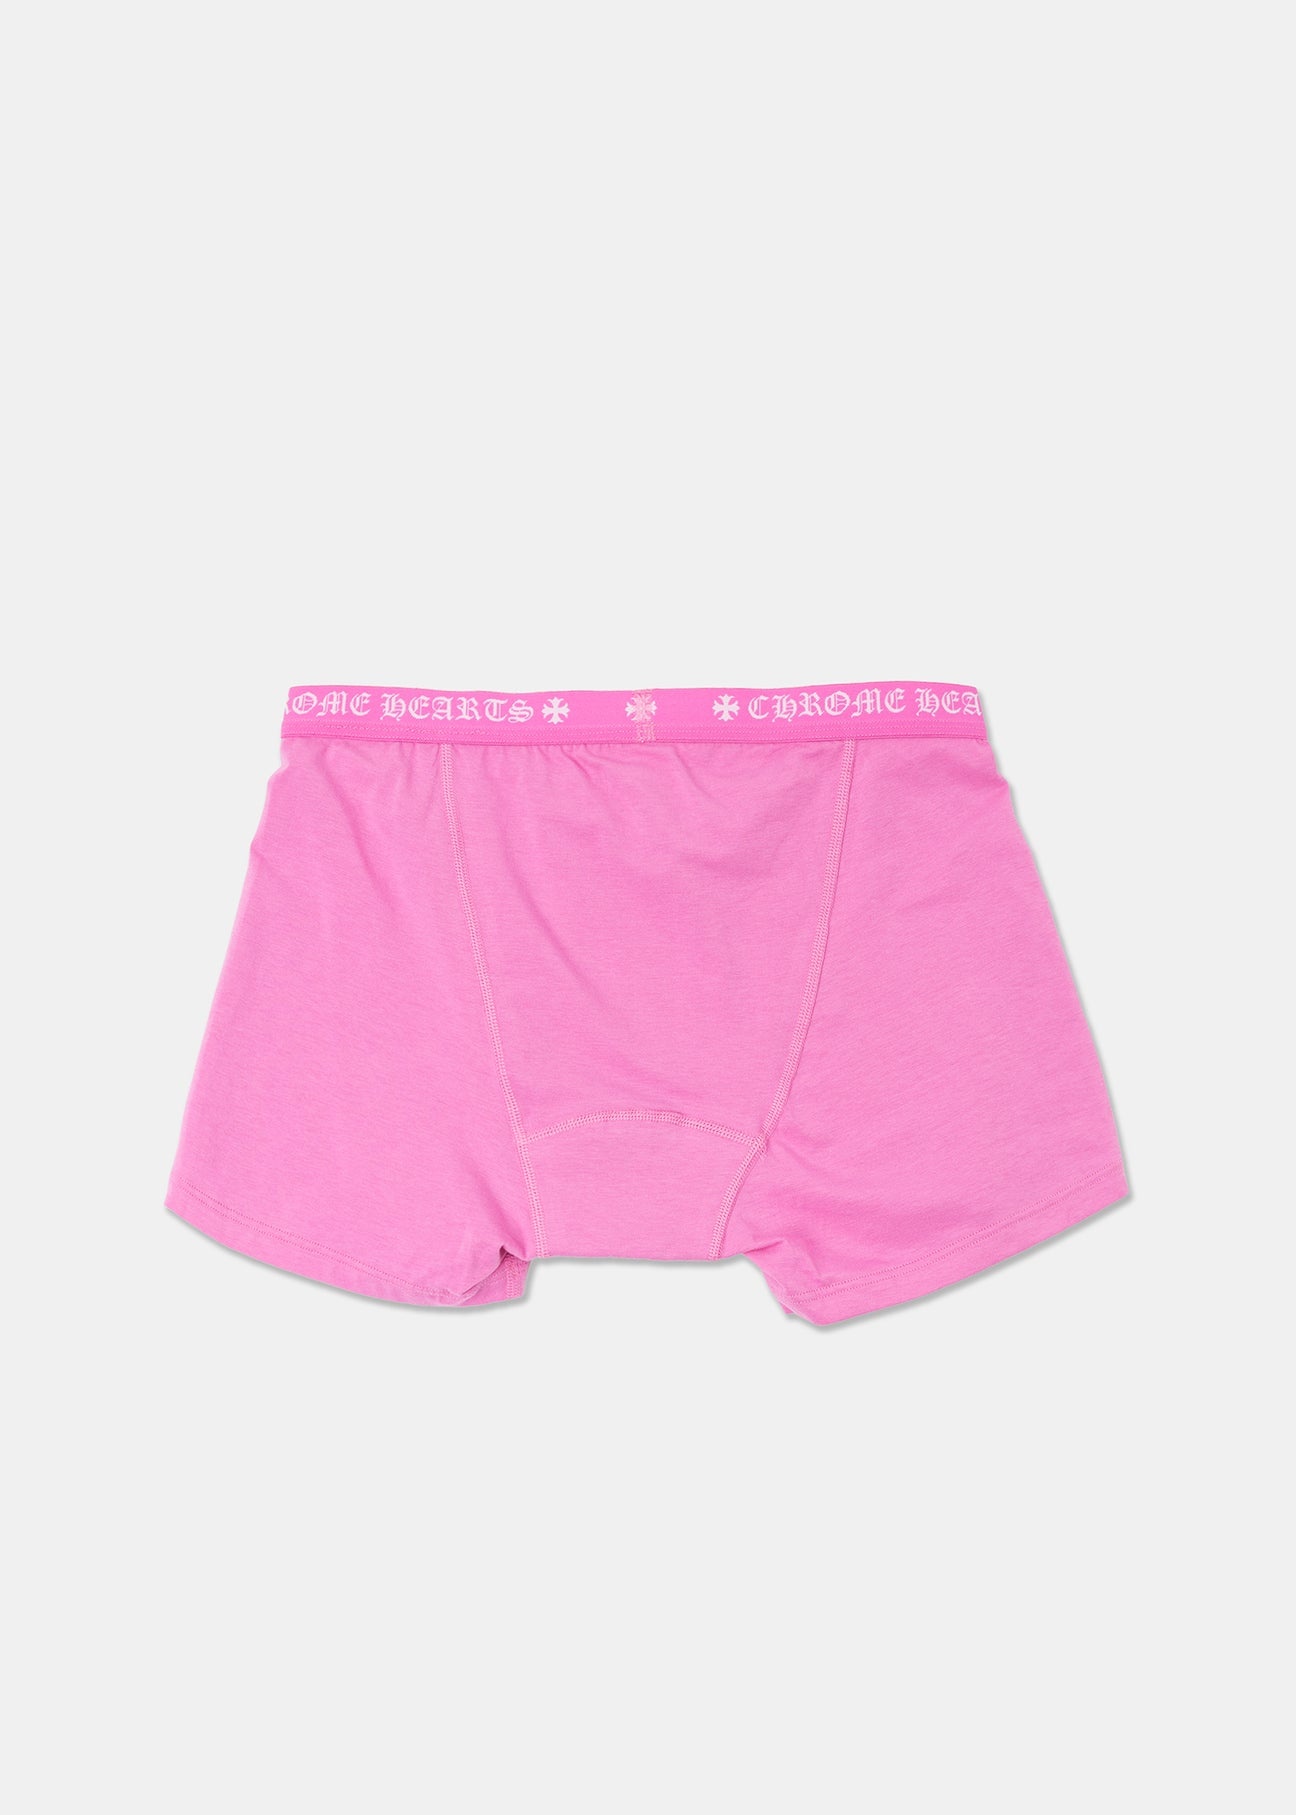 Pink Chrome Hearts Underwear - 3